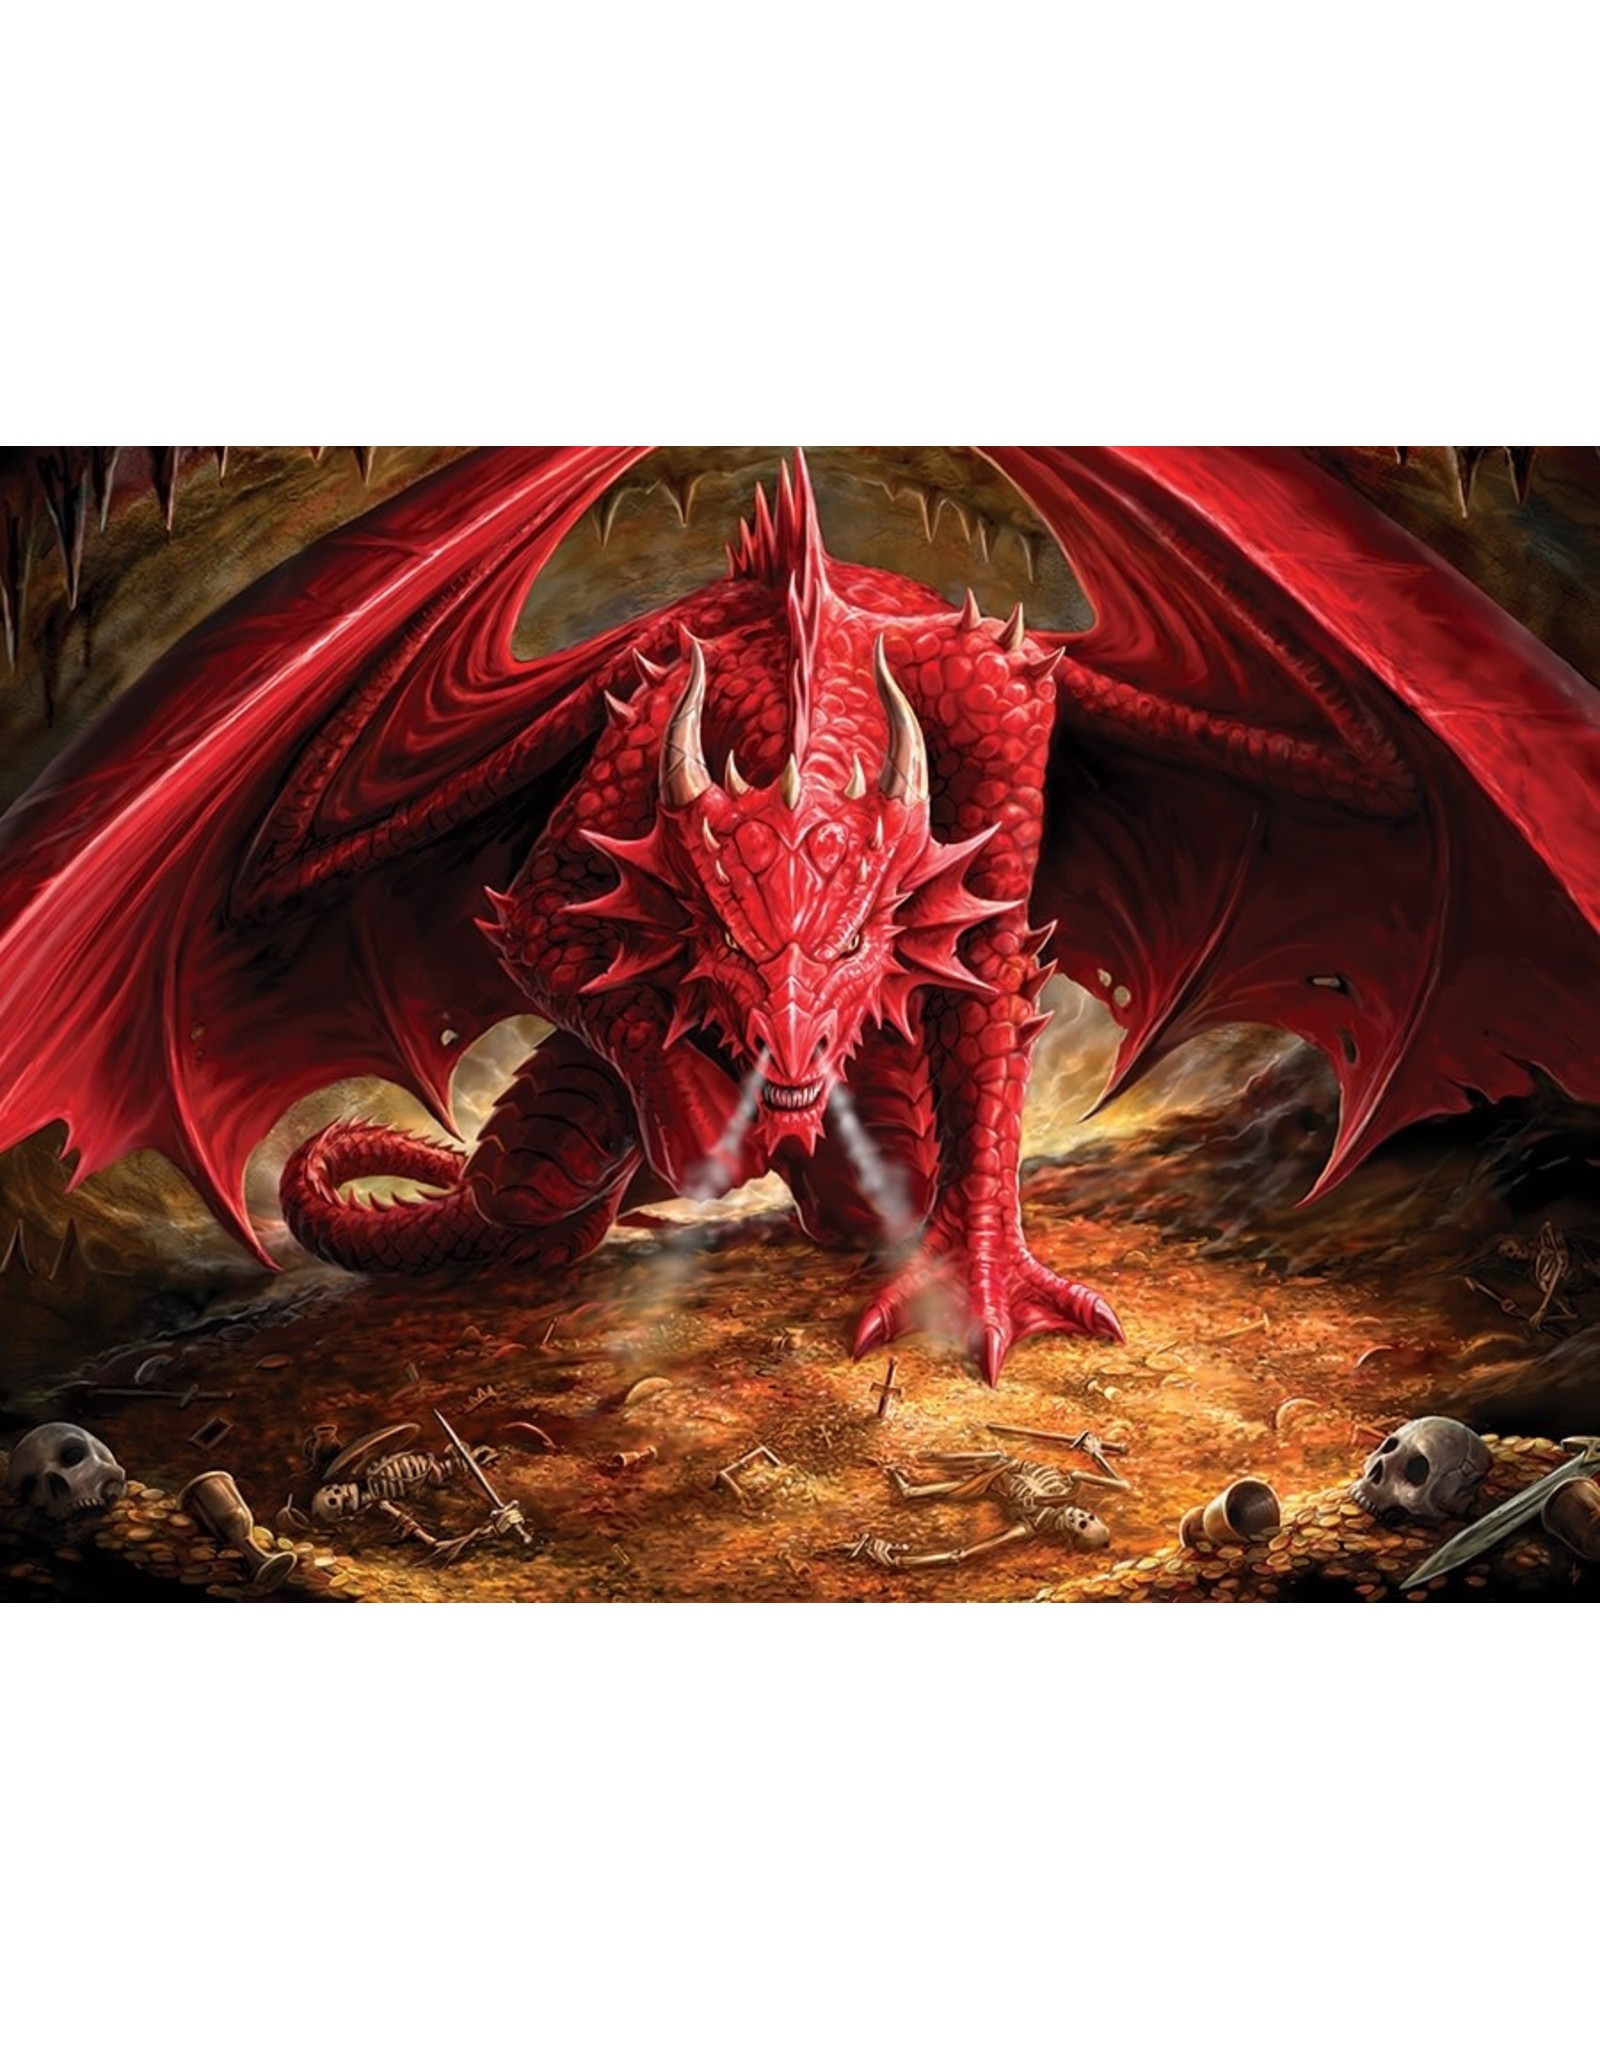 Cobble Hill Cobble Hill Puzzle Dragon's Lair  (1000 PC)